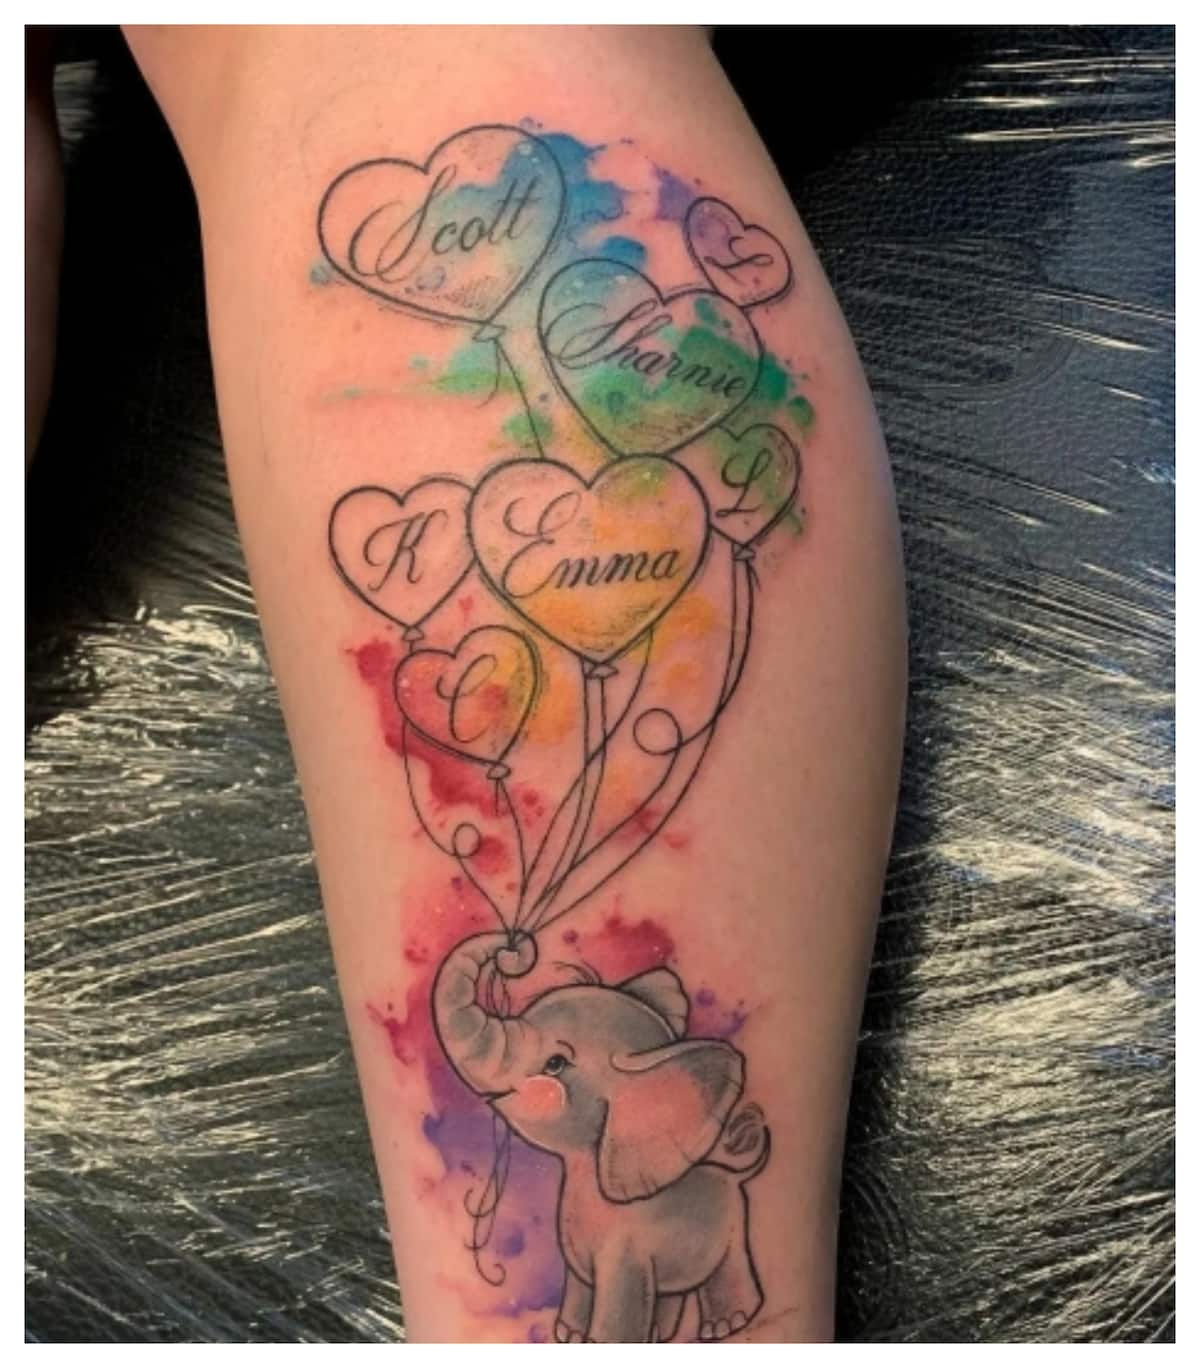 21 Tattoo Studio - Cute Baby Elephant Tattoo. #basictattoo #tattoo  #cutetattoo #cute #babyelephant #baby #elephant #simple #minimal  #smalltattoo #tattooforgirls #wristtattoo #jasongeorgetattoo  #jyotikhadkatattoo #21tattoostudio #vashi #bandra #thane ...